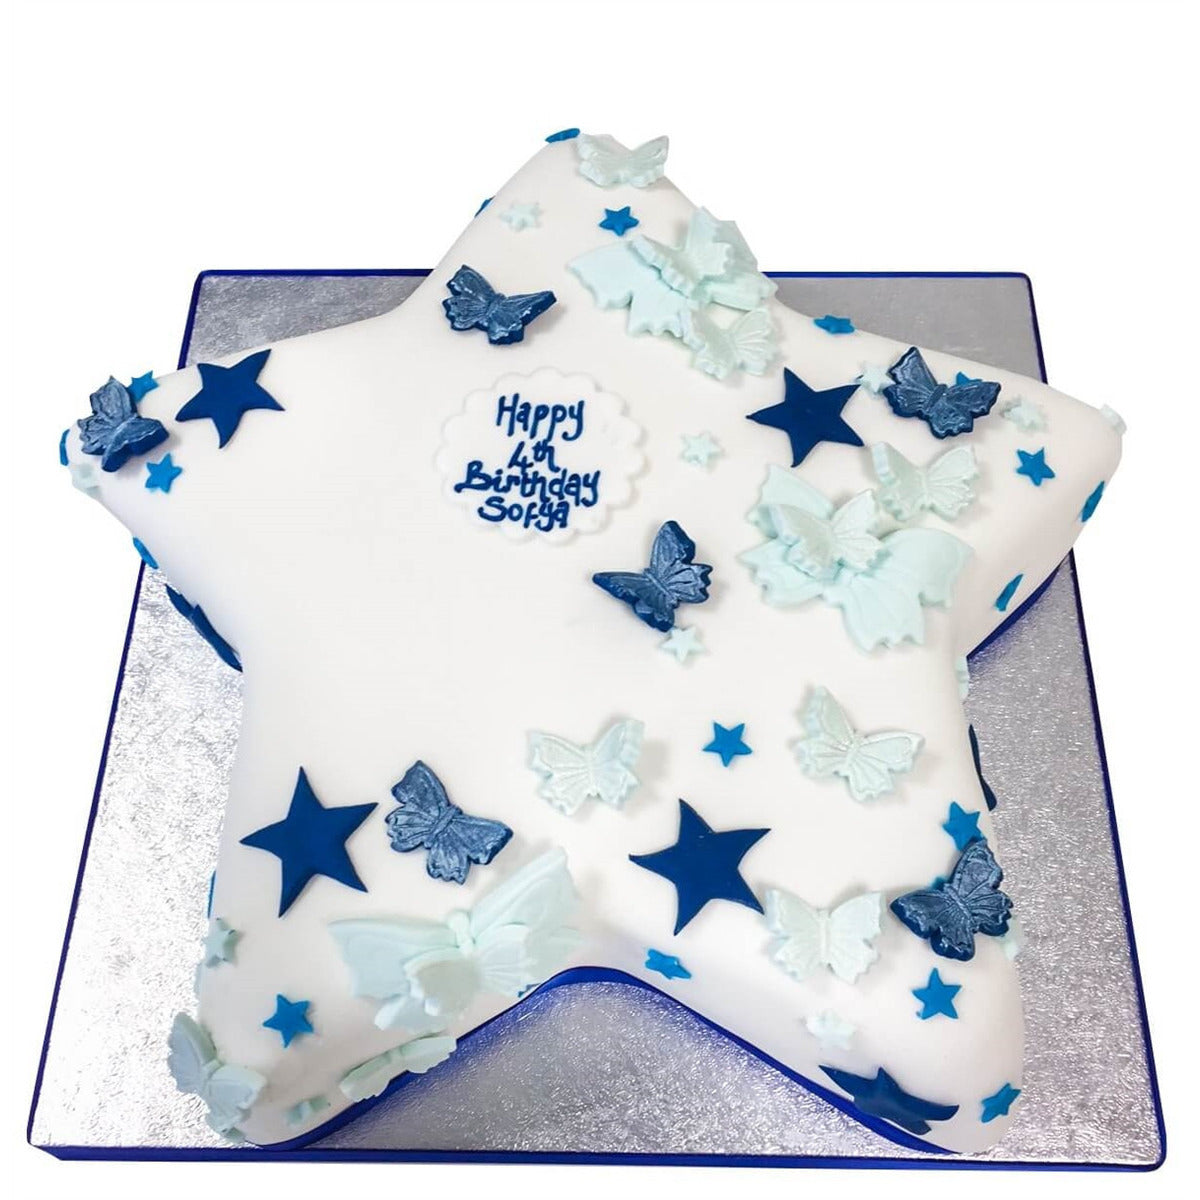 Customized Twinkle Star Birthday cake by bakisto